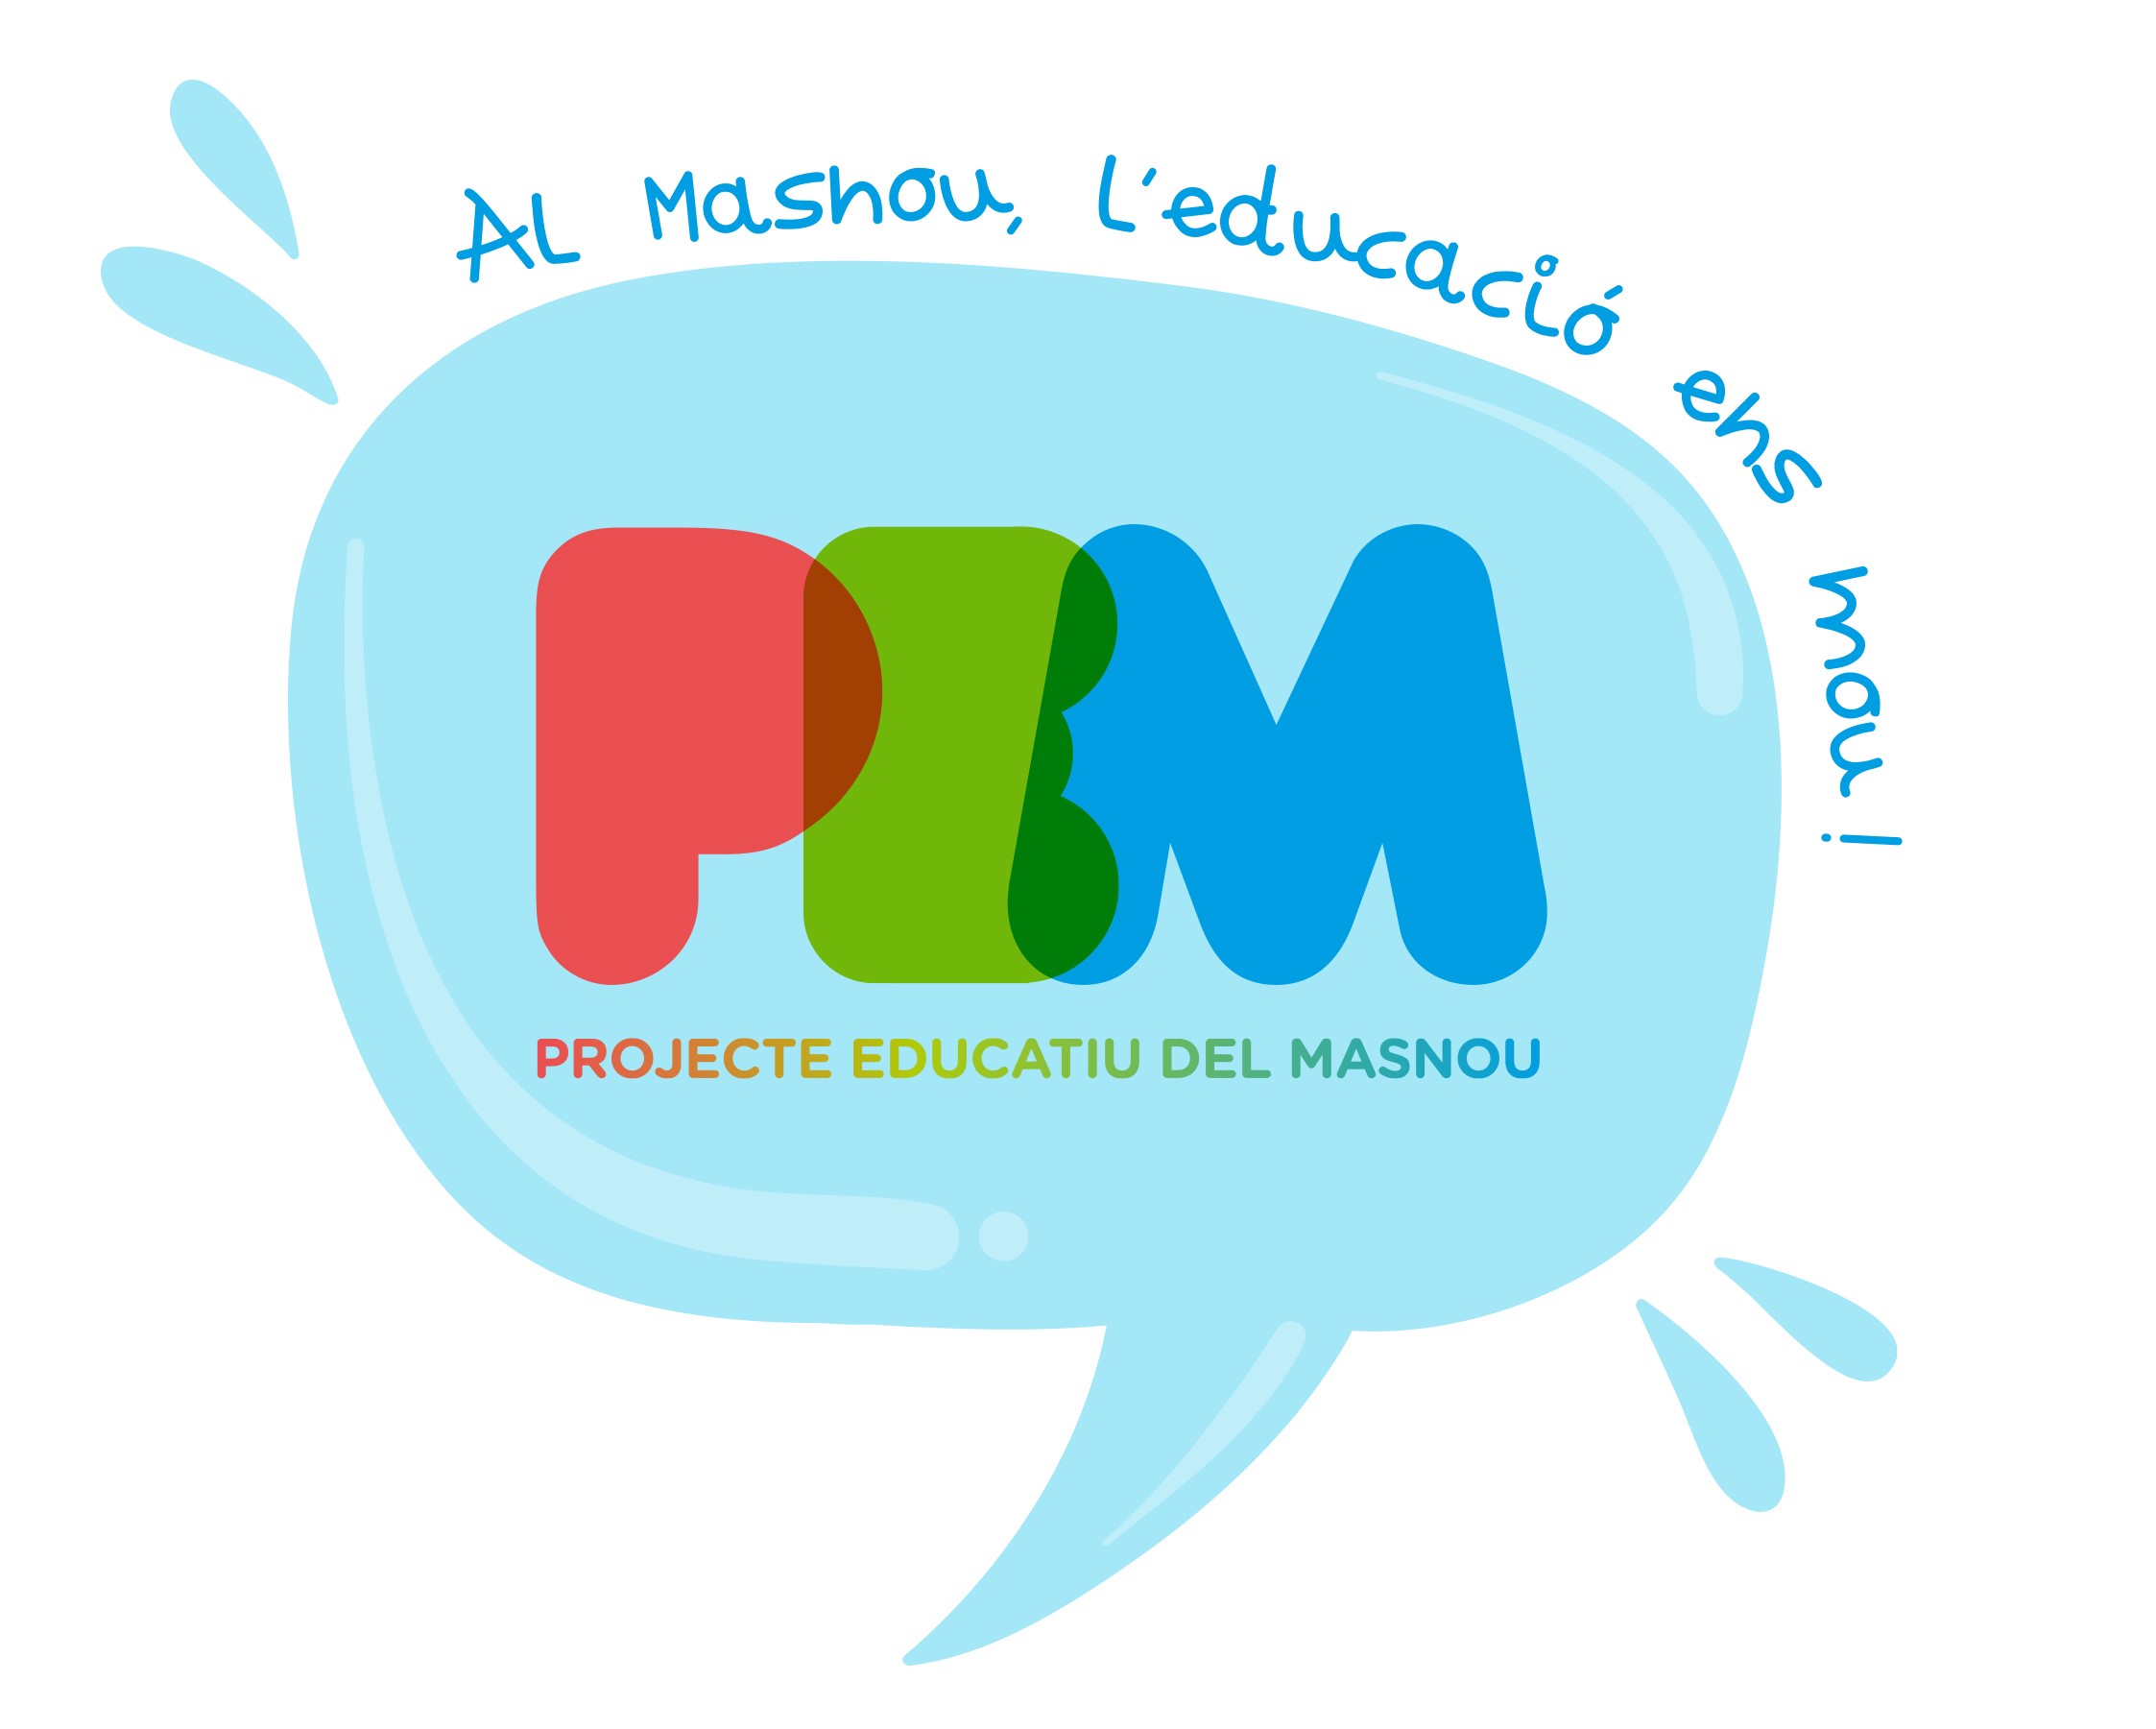 Logotip del Projecte Educatiu del Masnou